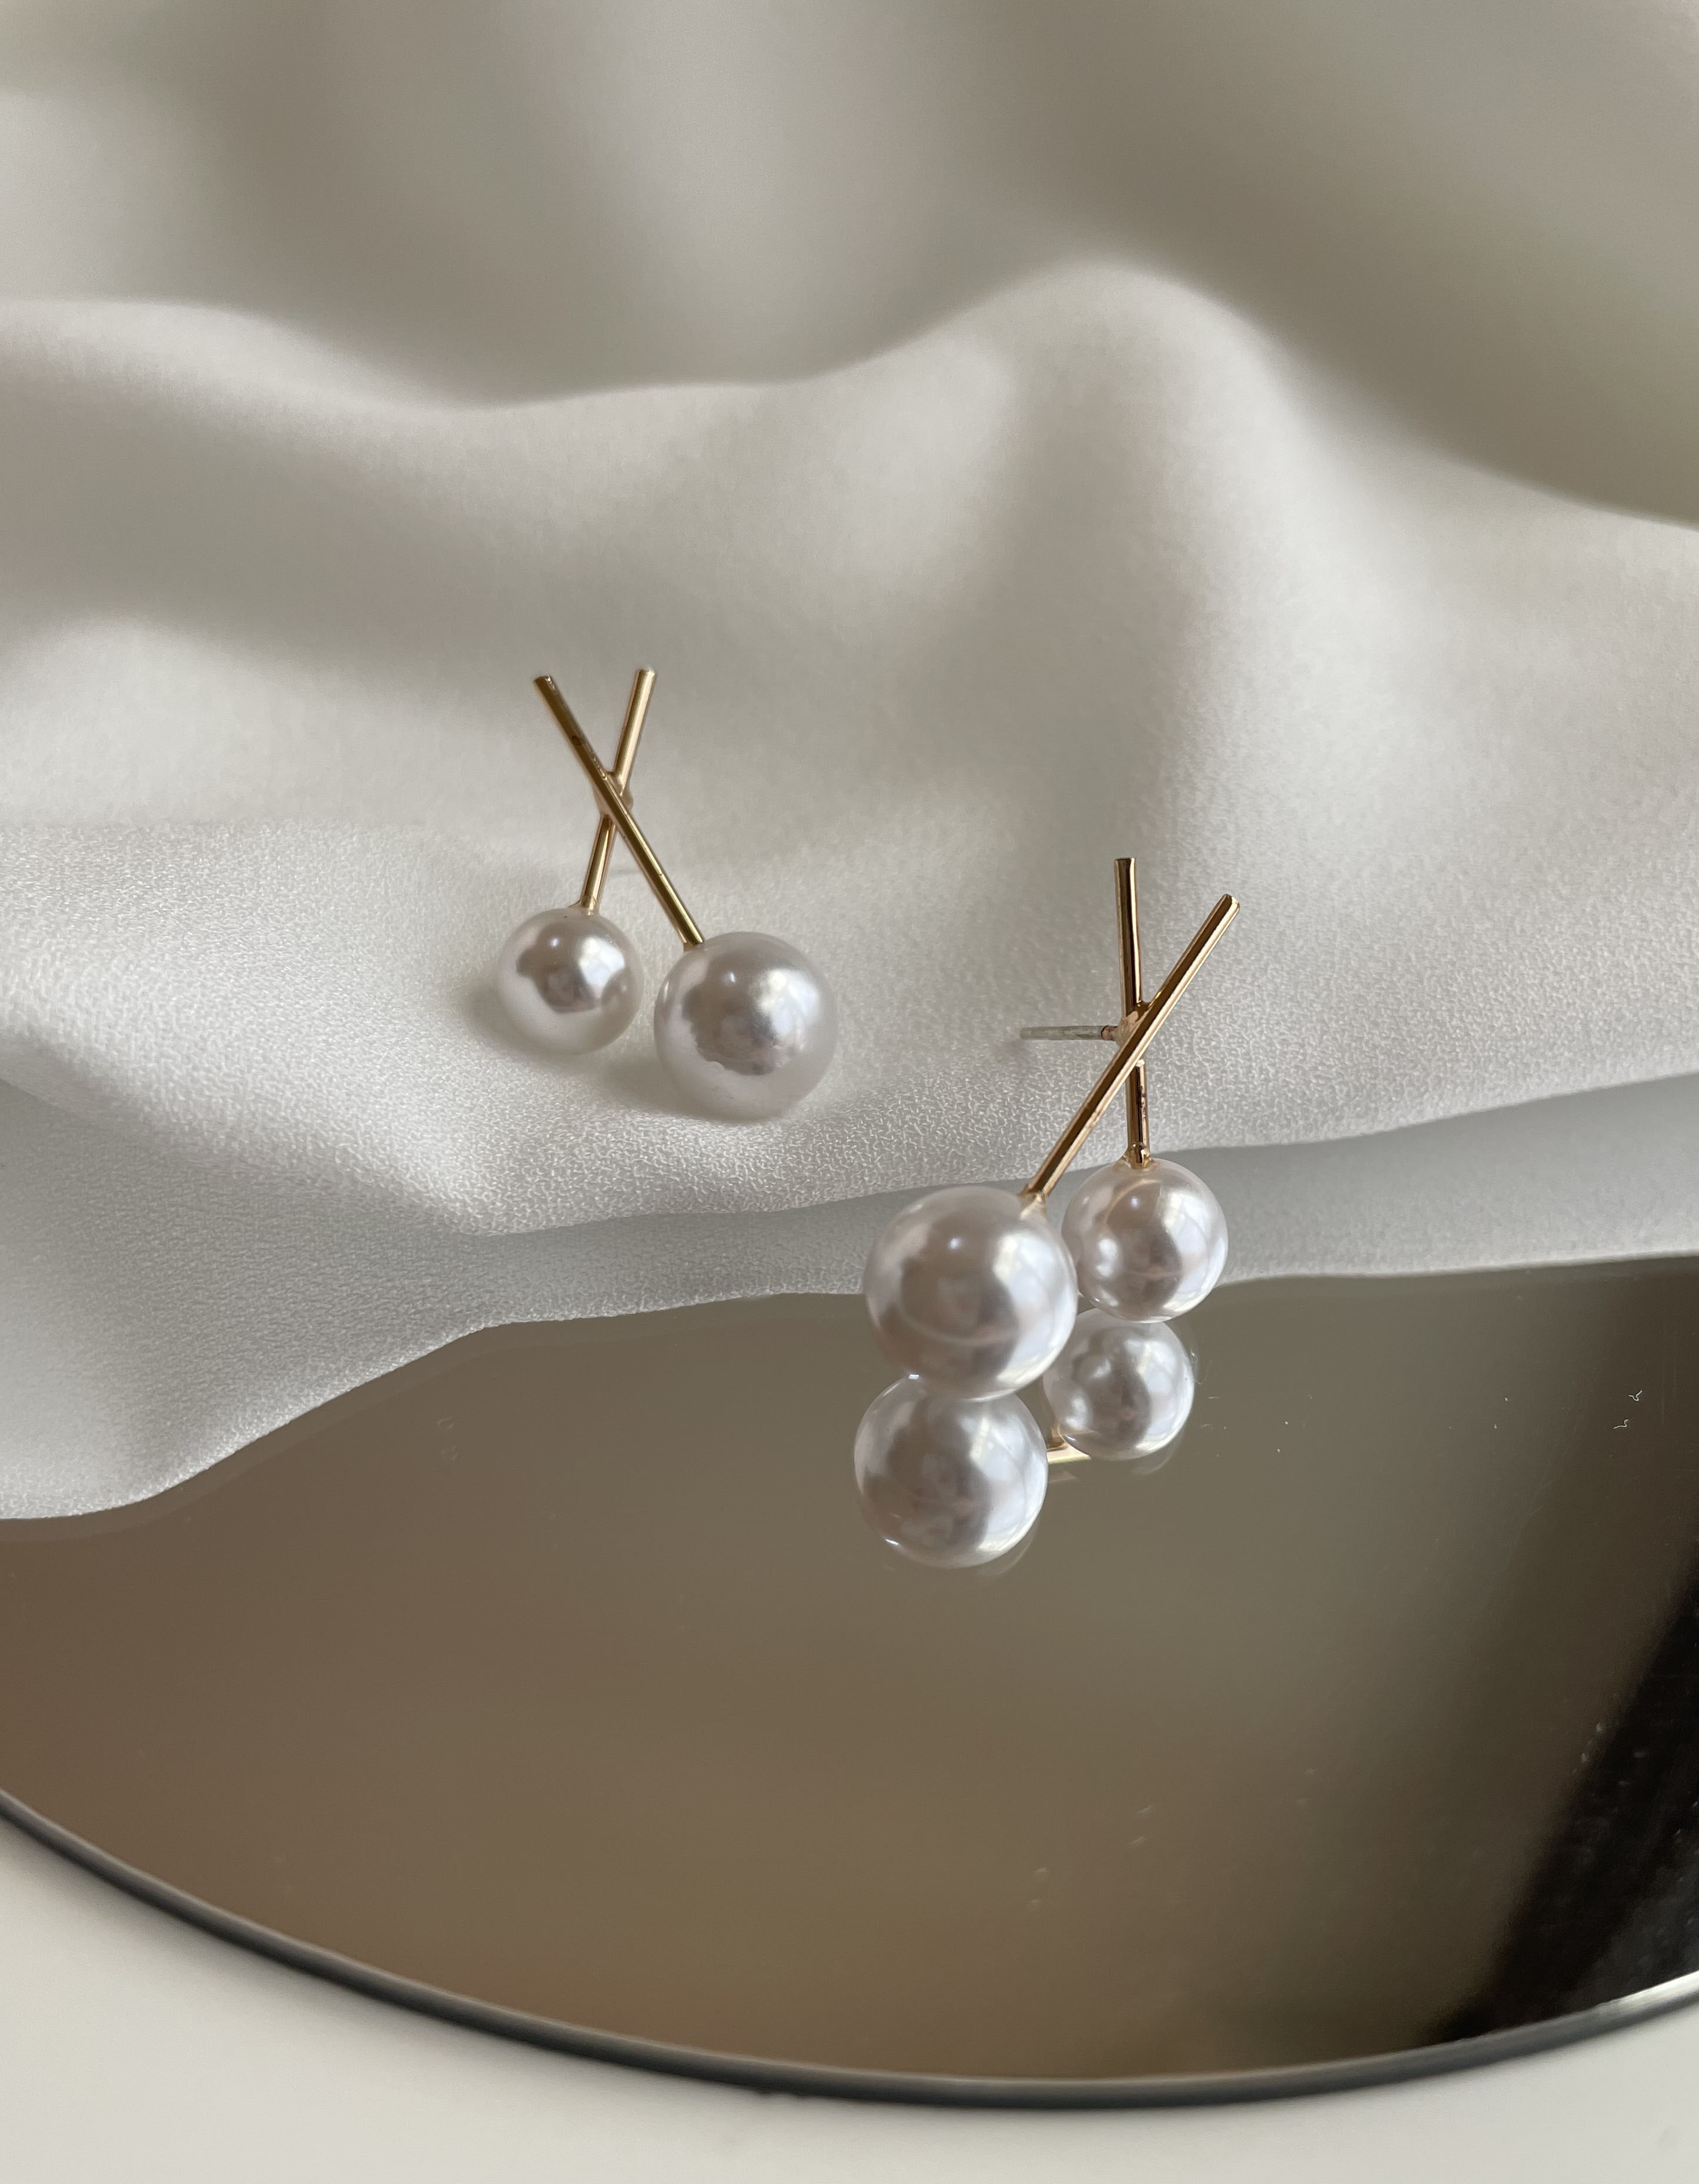 針式 - 交叉大小珍珠耳環 - 飾品調色盤 | 迪希雅 deesir